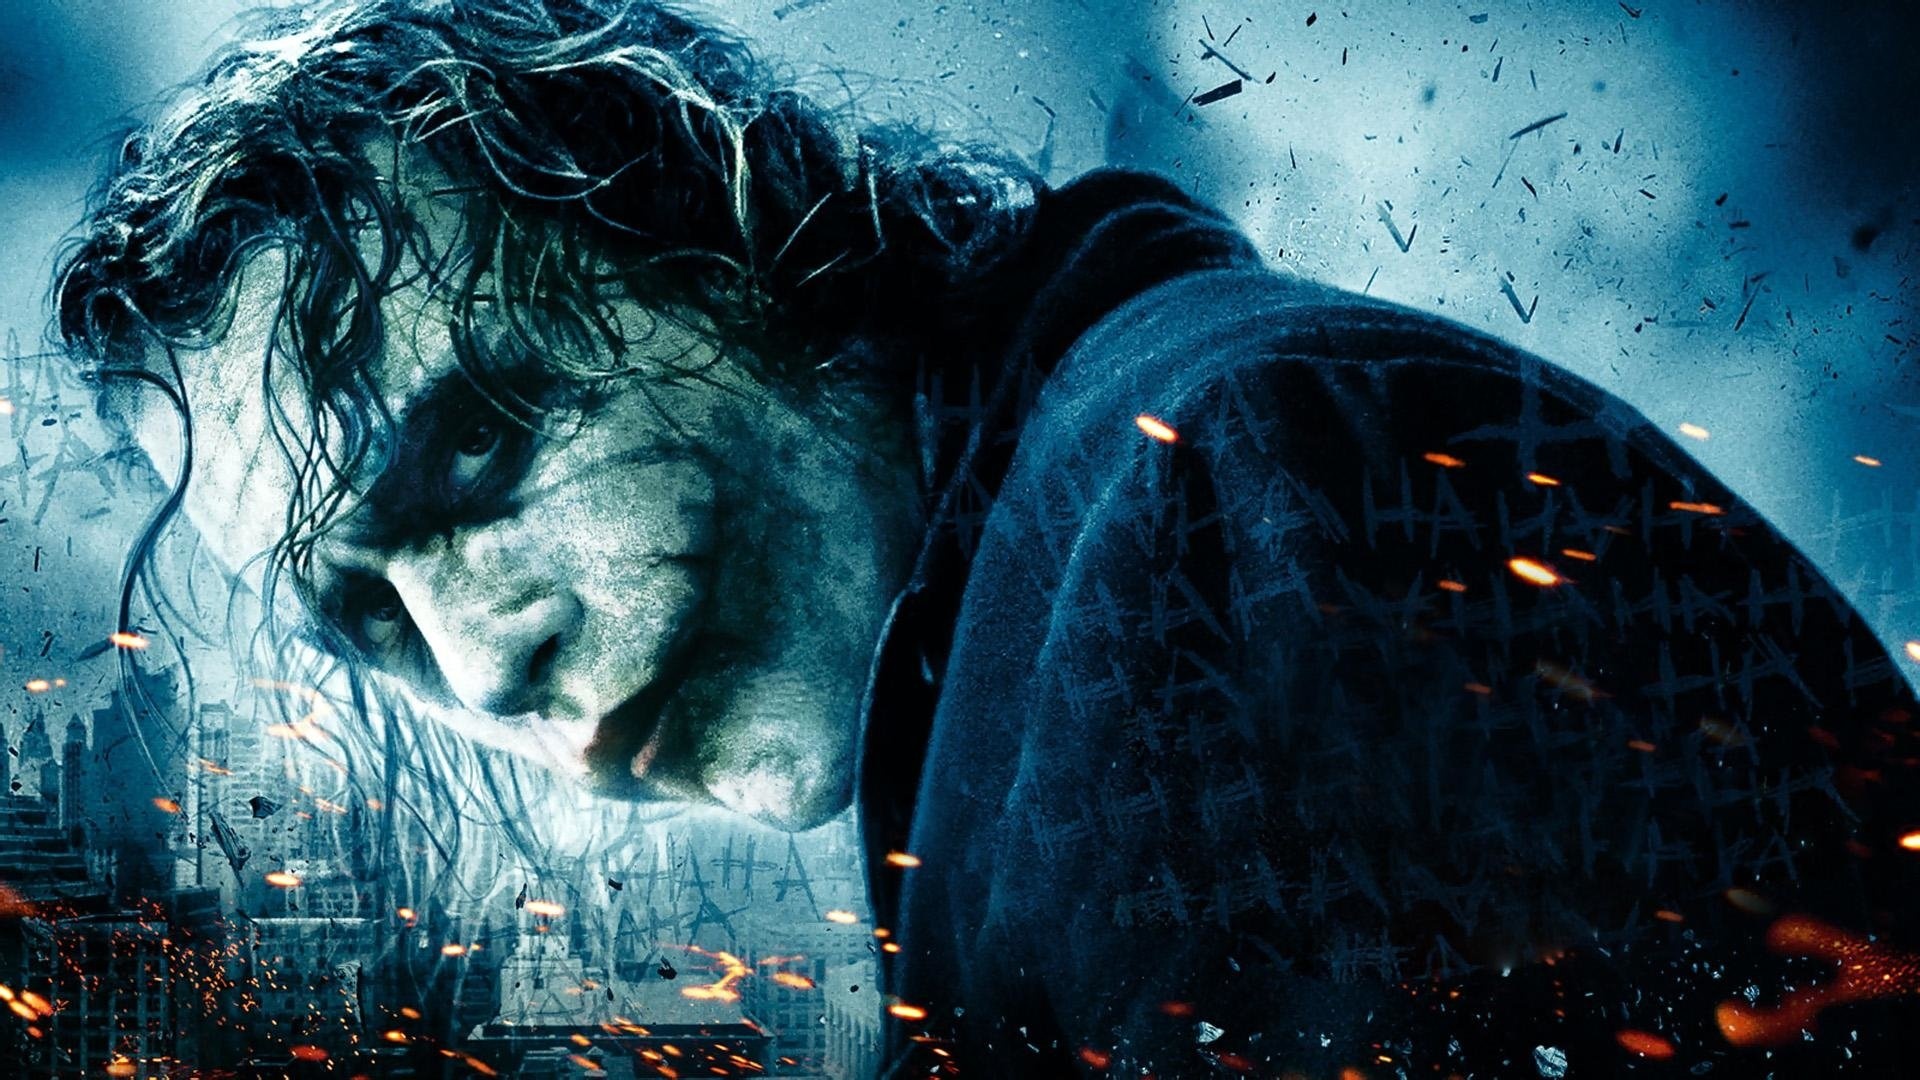 The Dark Knight, Heath Ledger (Joker) Wallpaper, 1920x1080 Full HD Desktop